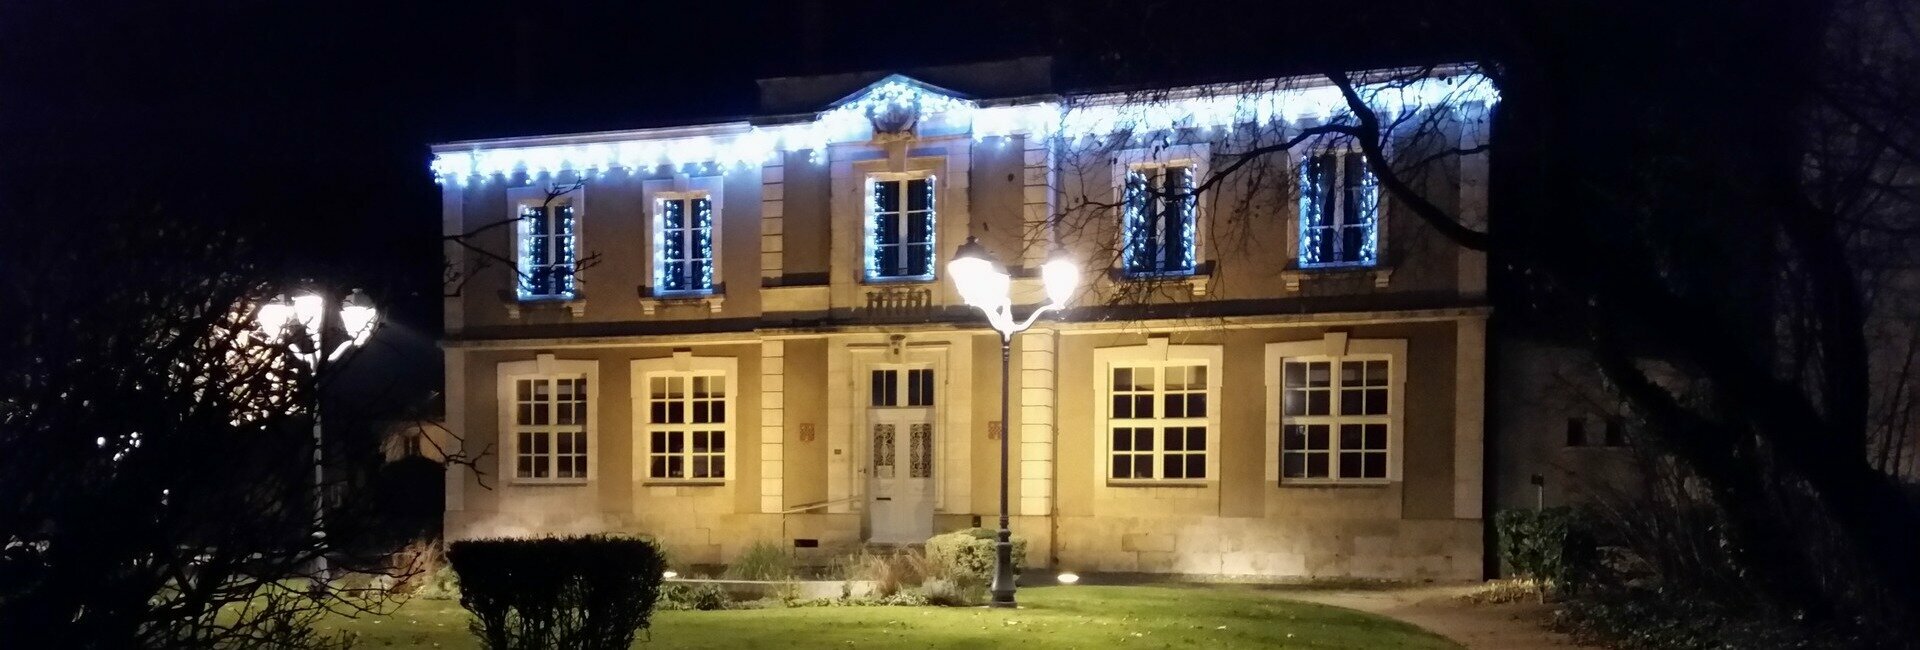 Le conseil municipal de la mairie de Aschères-Le-Marché (45) Loiret